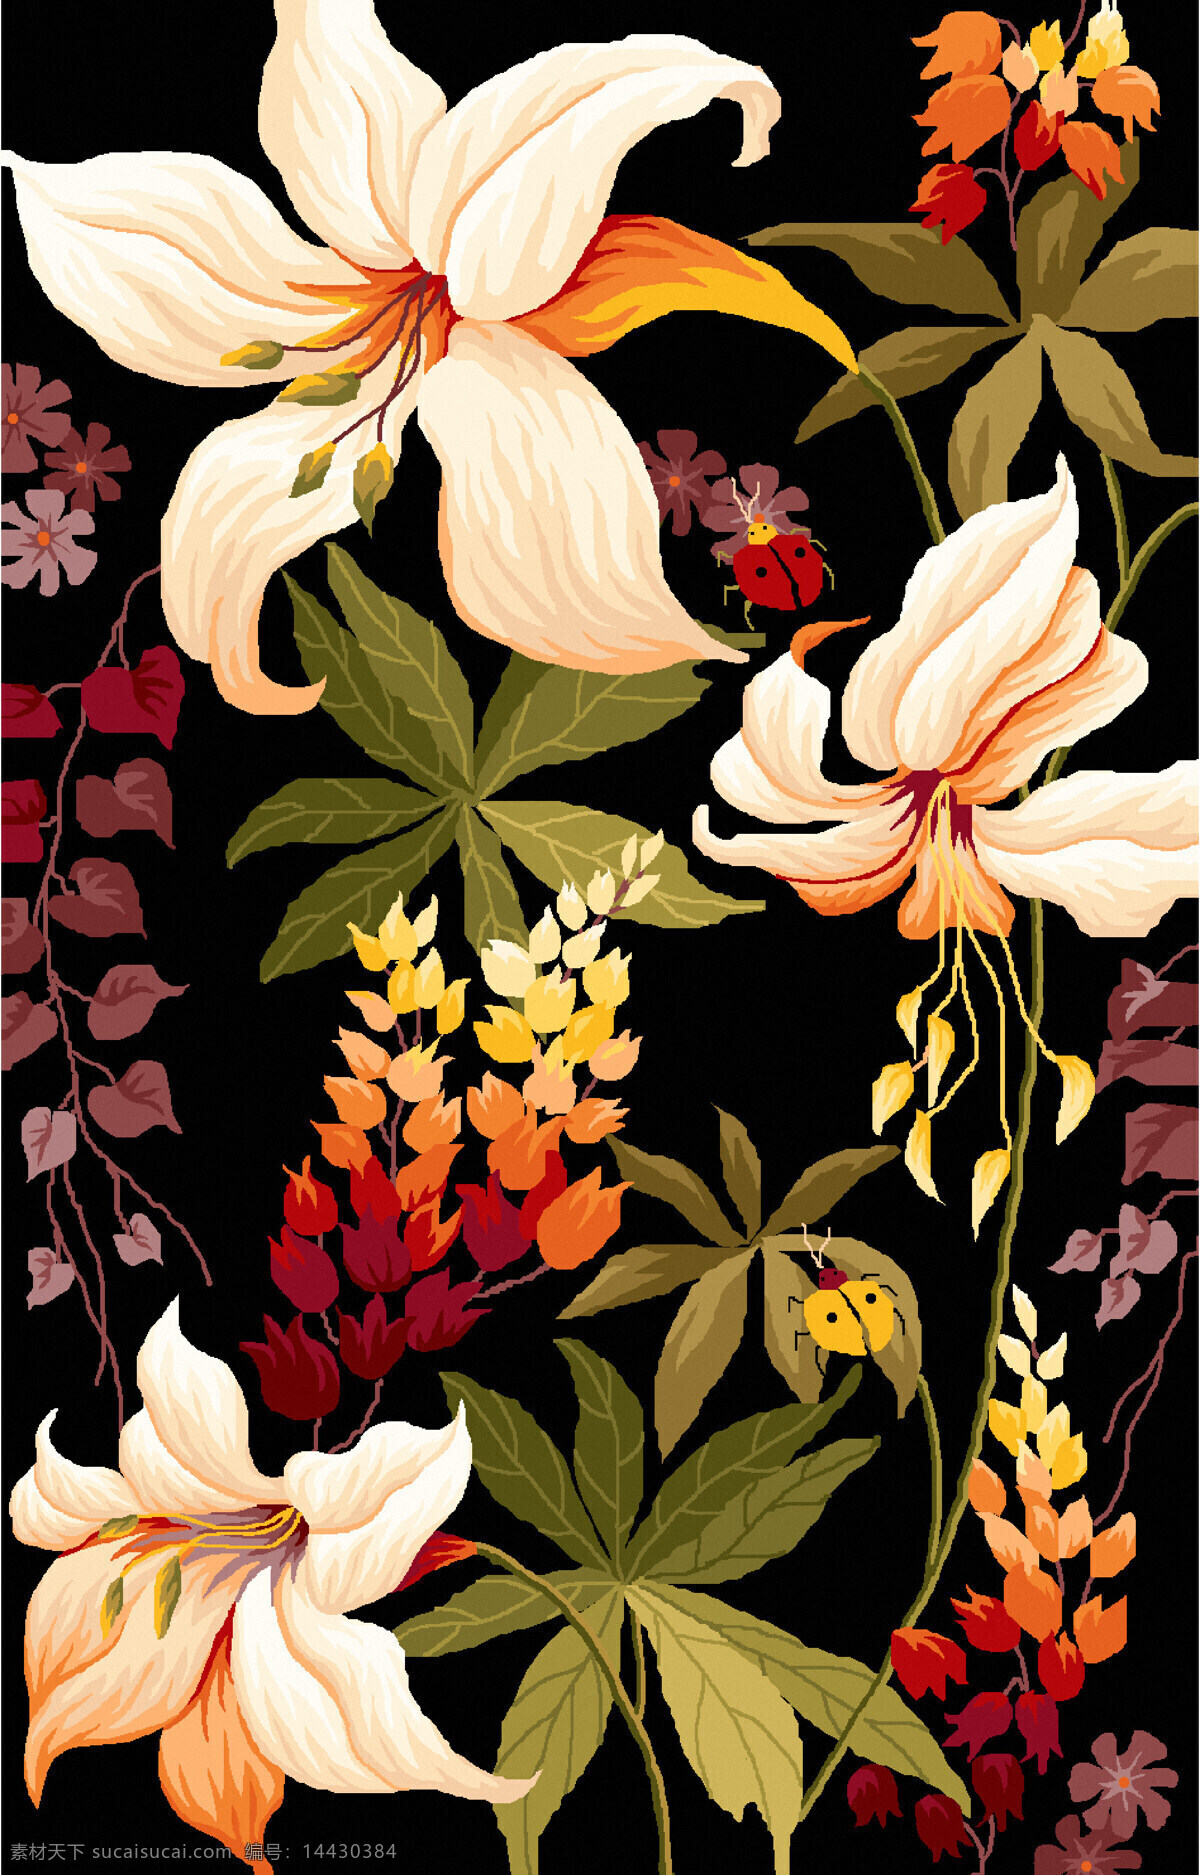 艳丽花卉植物 纺织面料 沙发布艺 纹饰 纹样 地毯图案设计 花卉植物 底纹边框 花边花纹